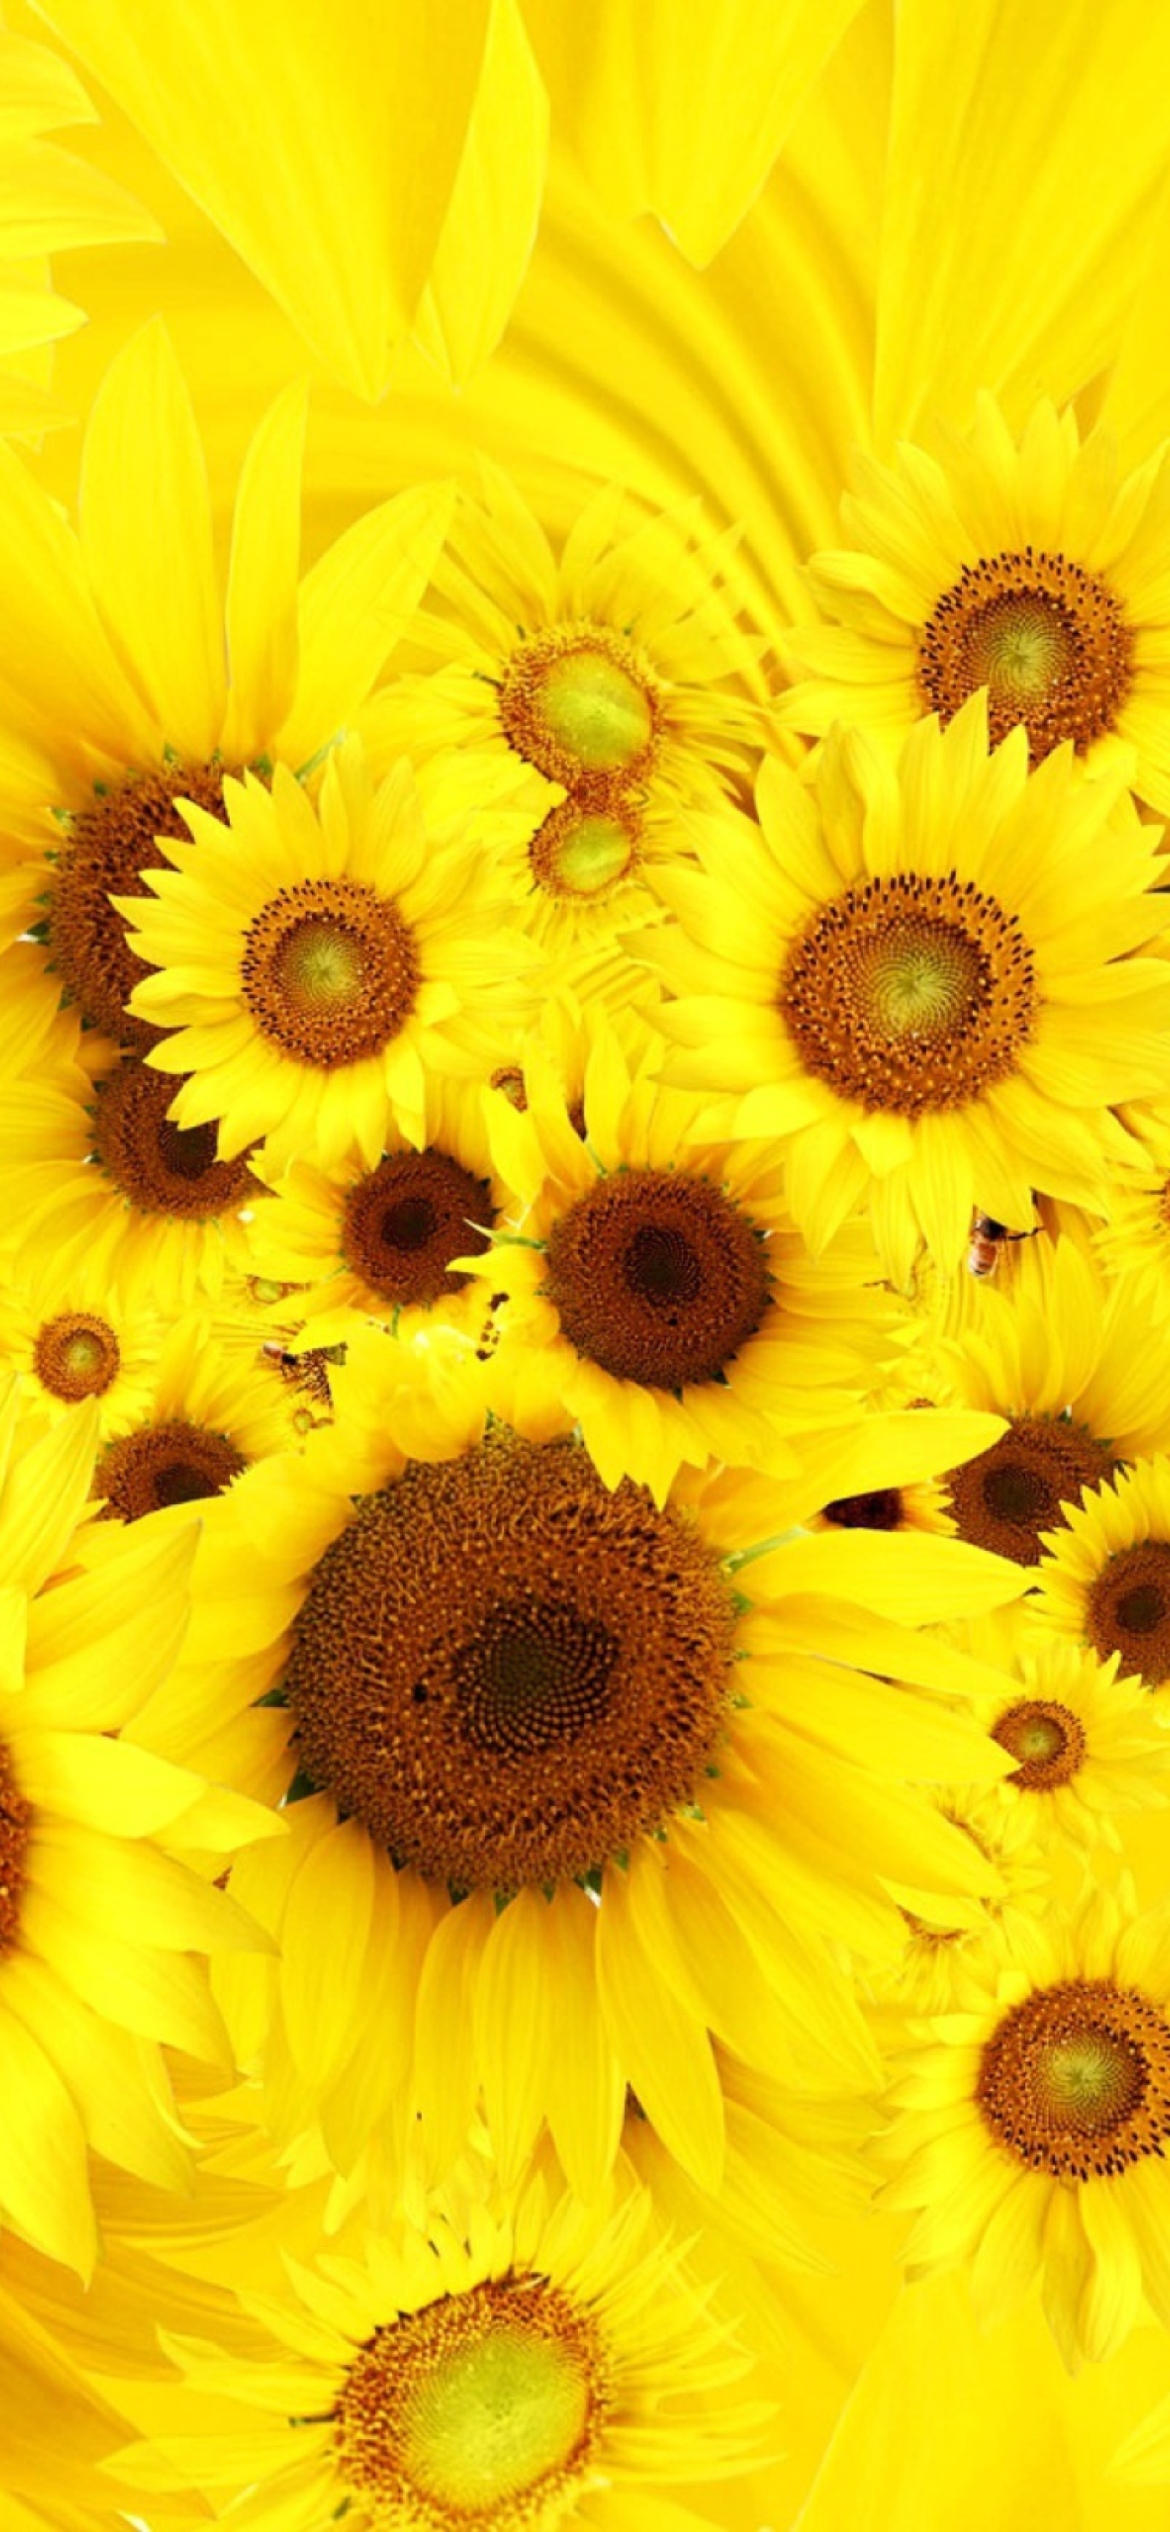 Cool Sunflowers wallpaper 1170x2532